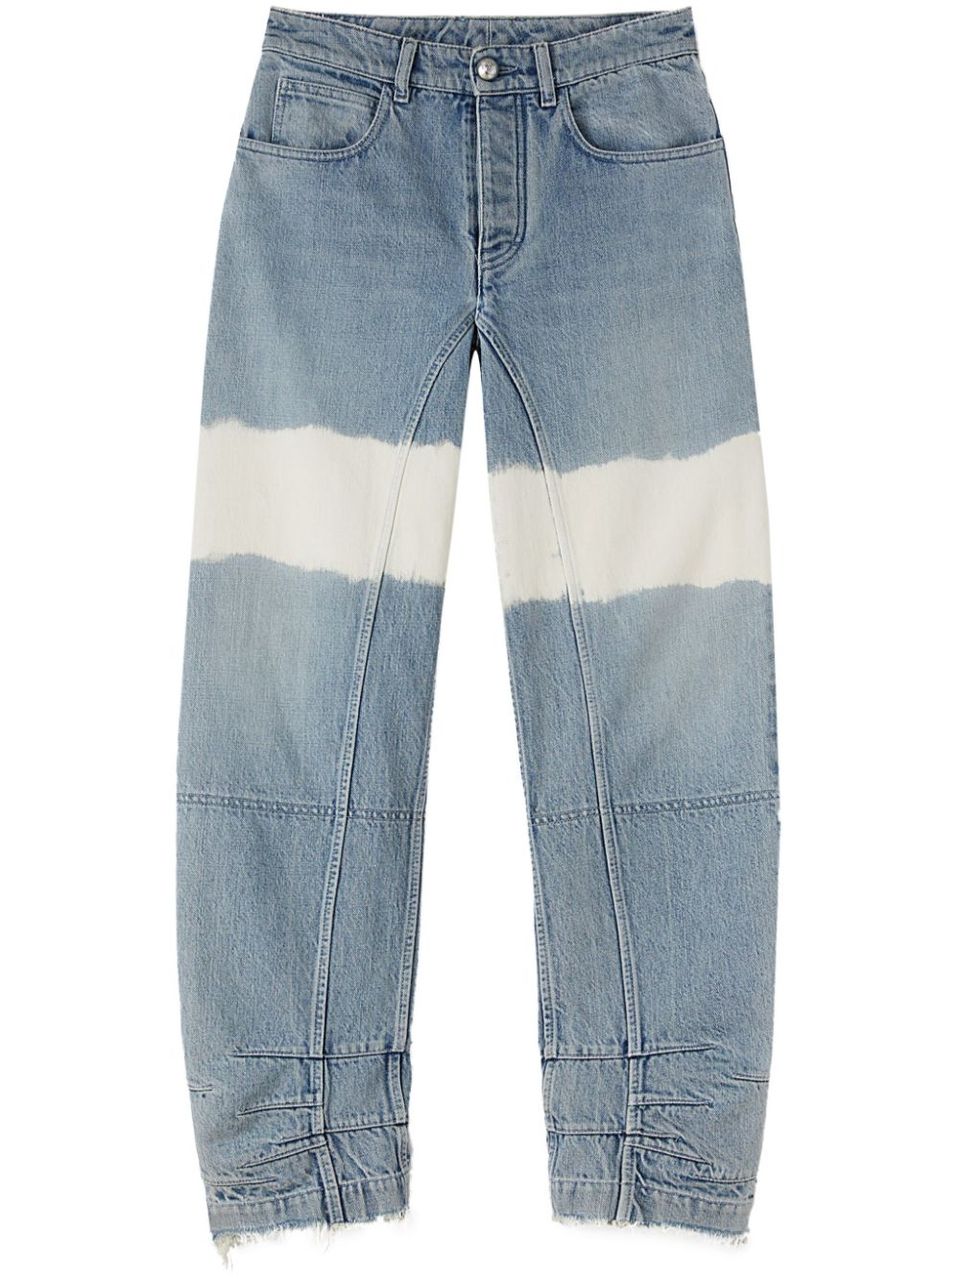 Jeans dettaglio striscia